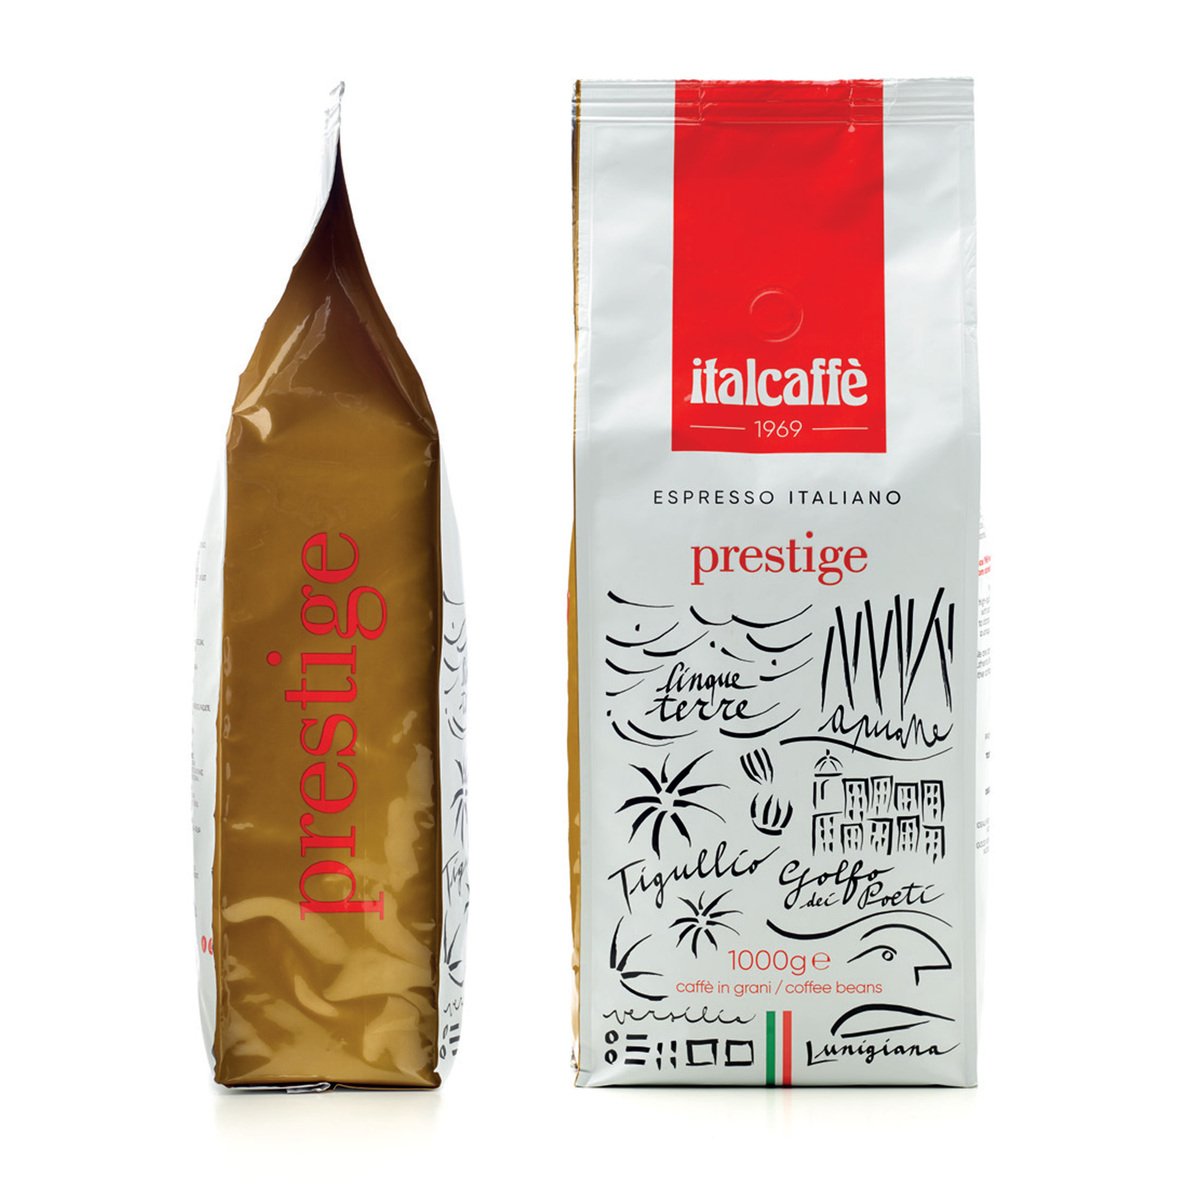 Italcaffe Coffee Beans Espresso Italiano Prestige 1 kg